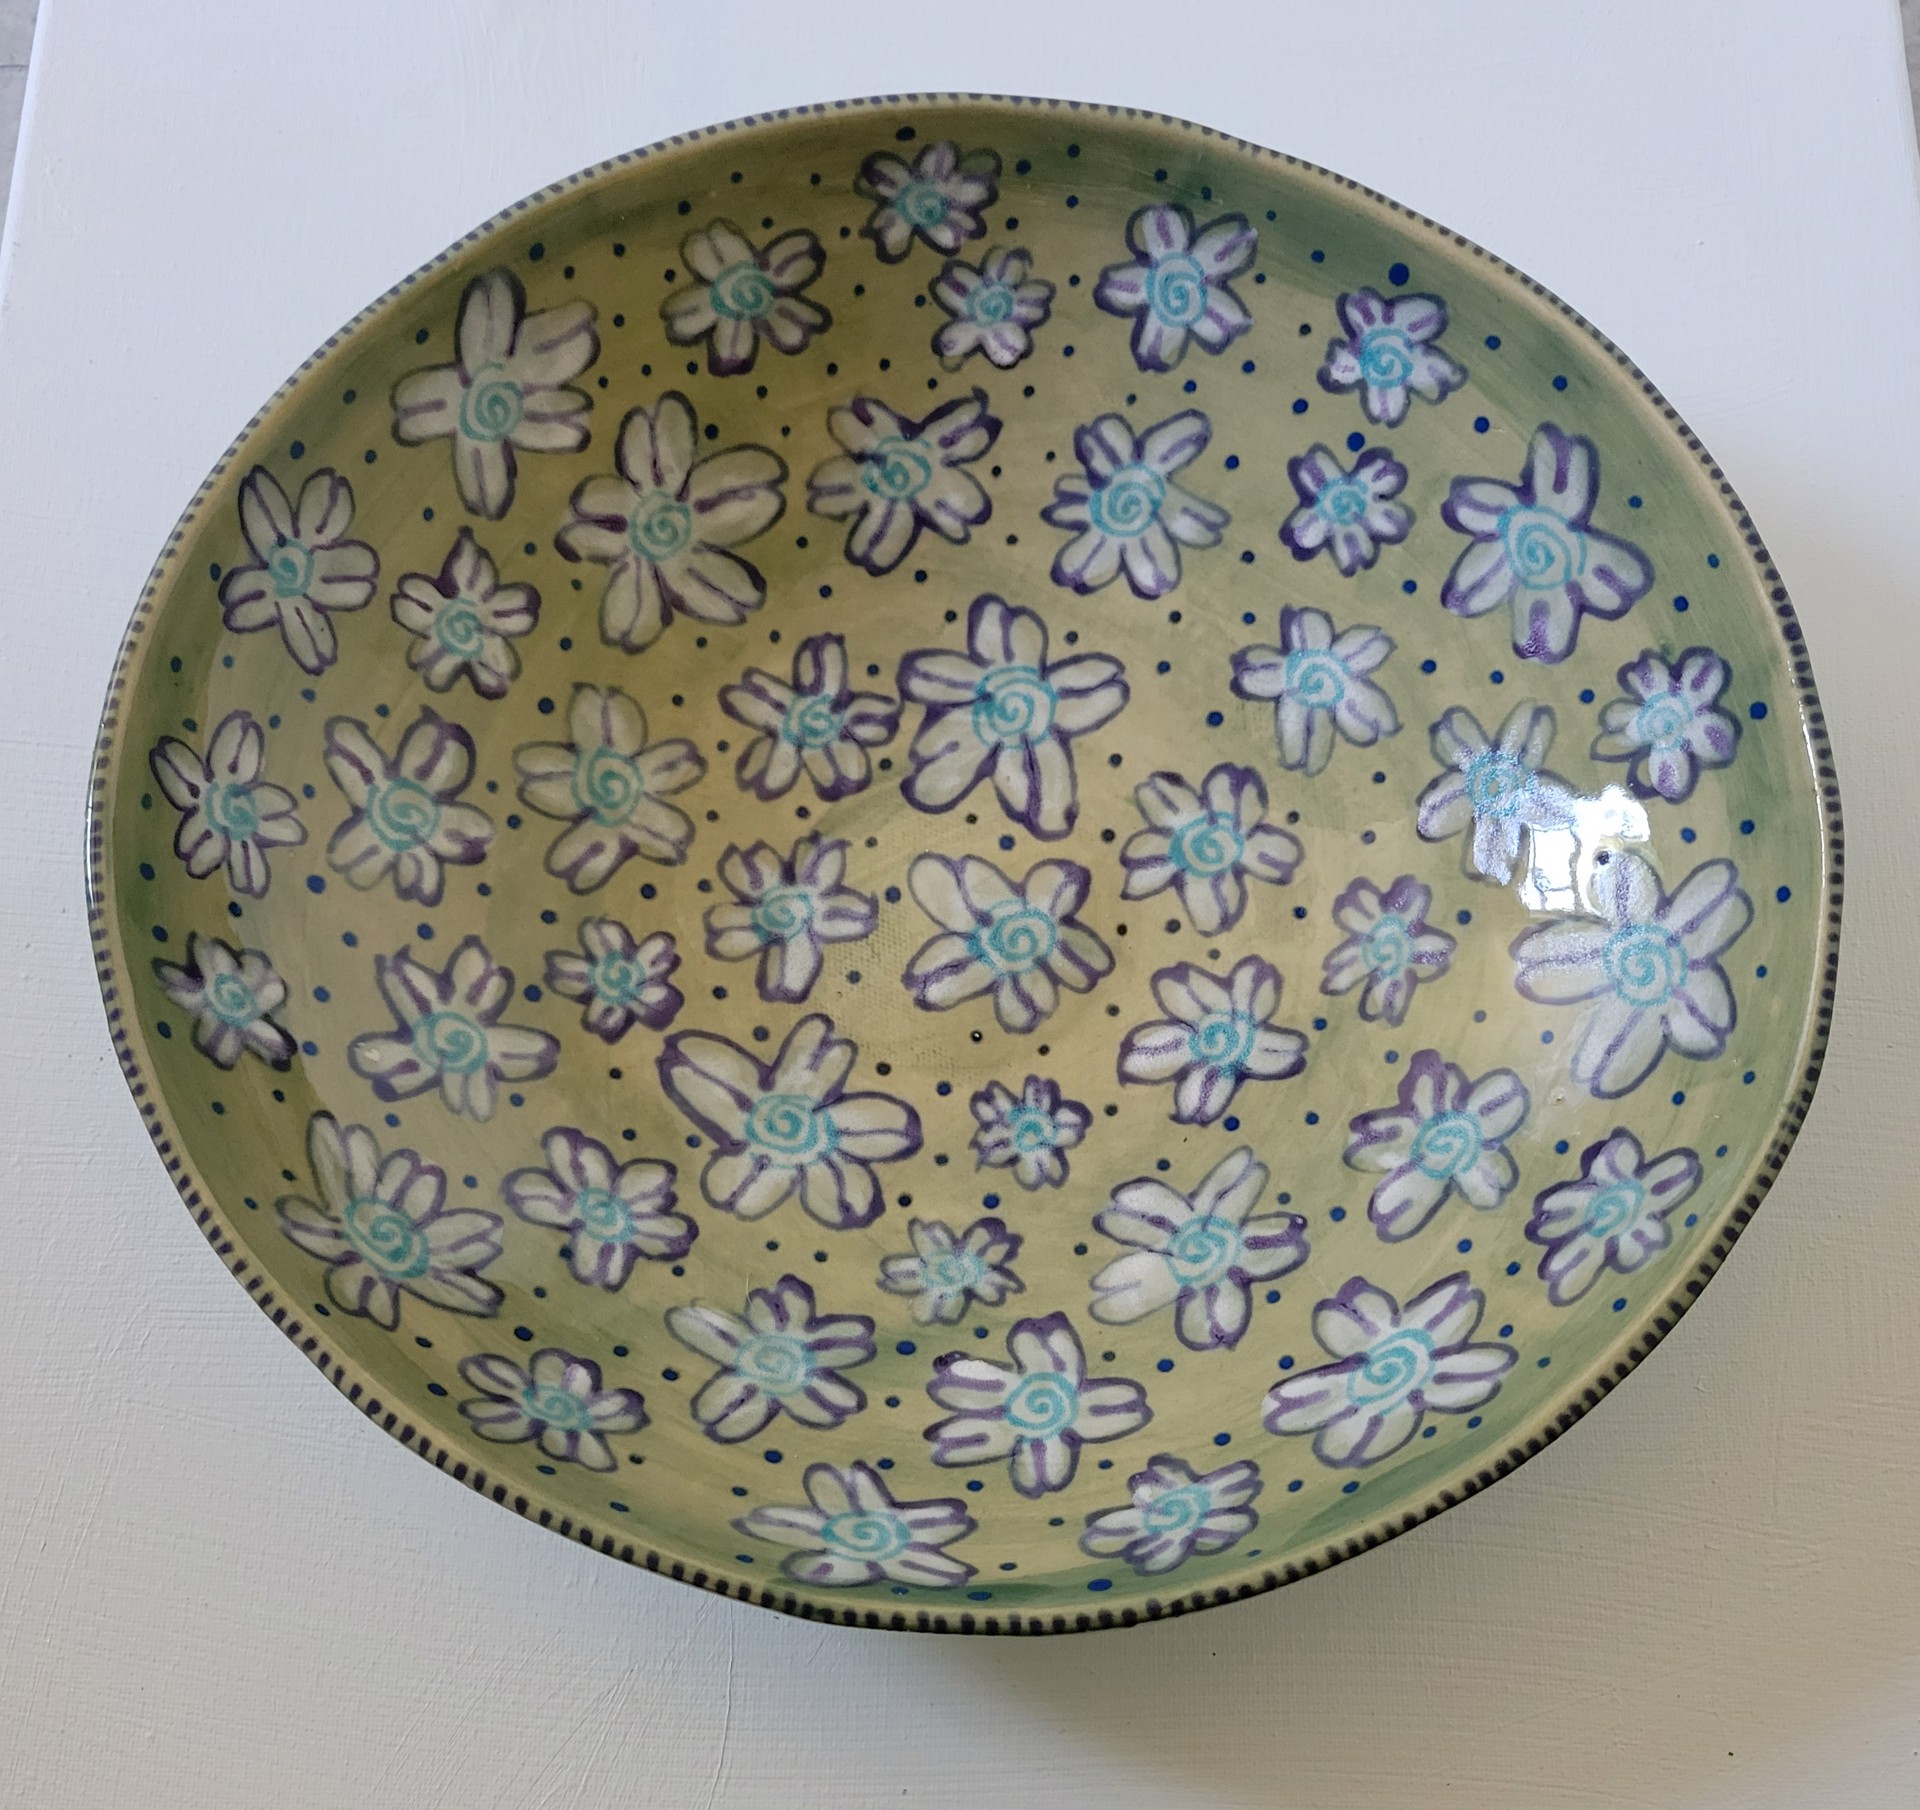 Floral Swirls Bowl by Lynne Kasparian